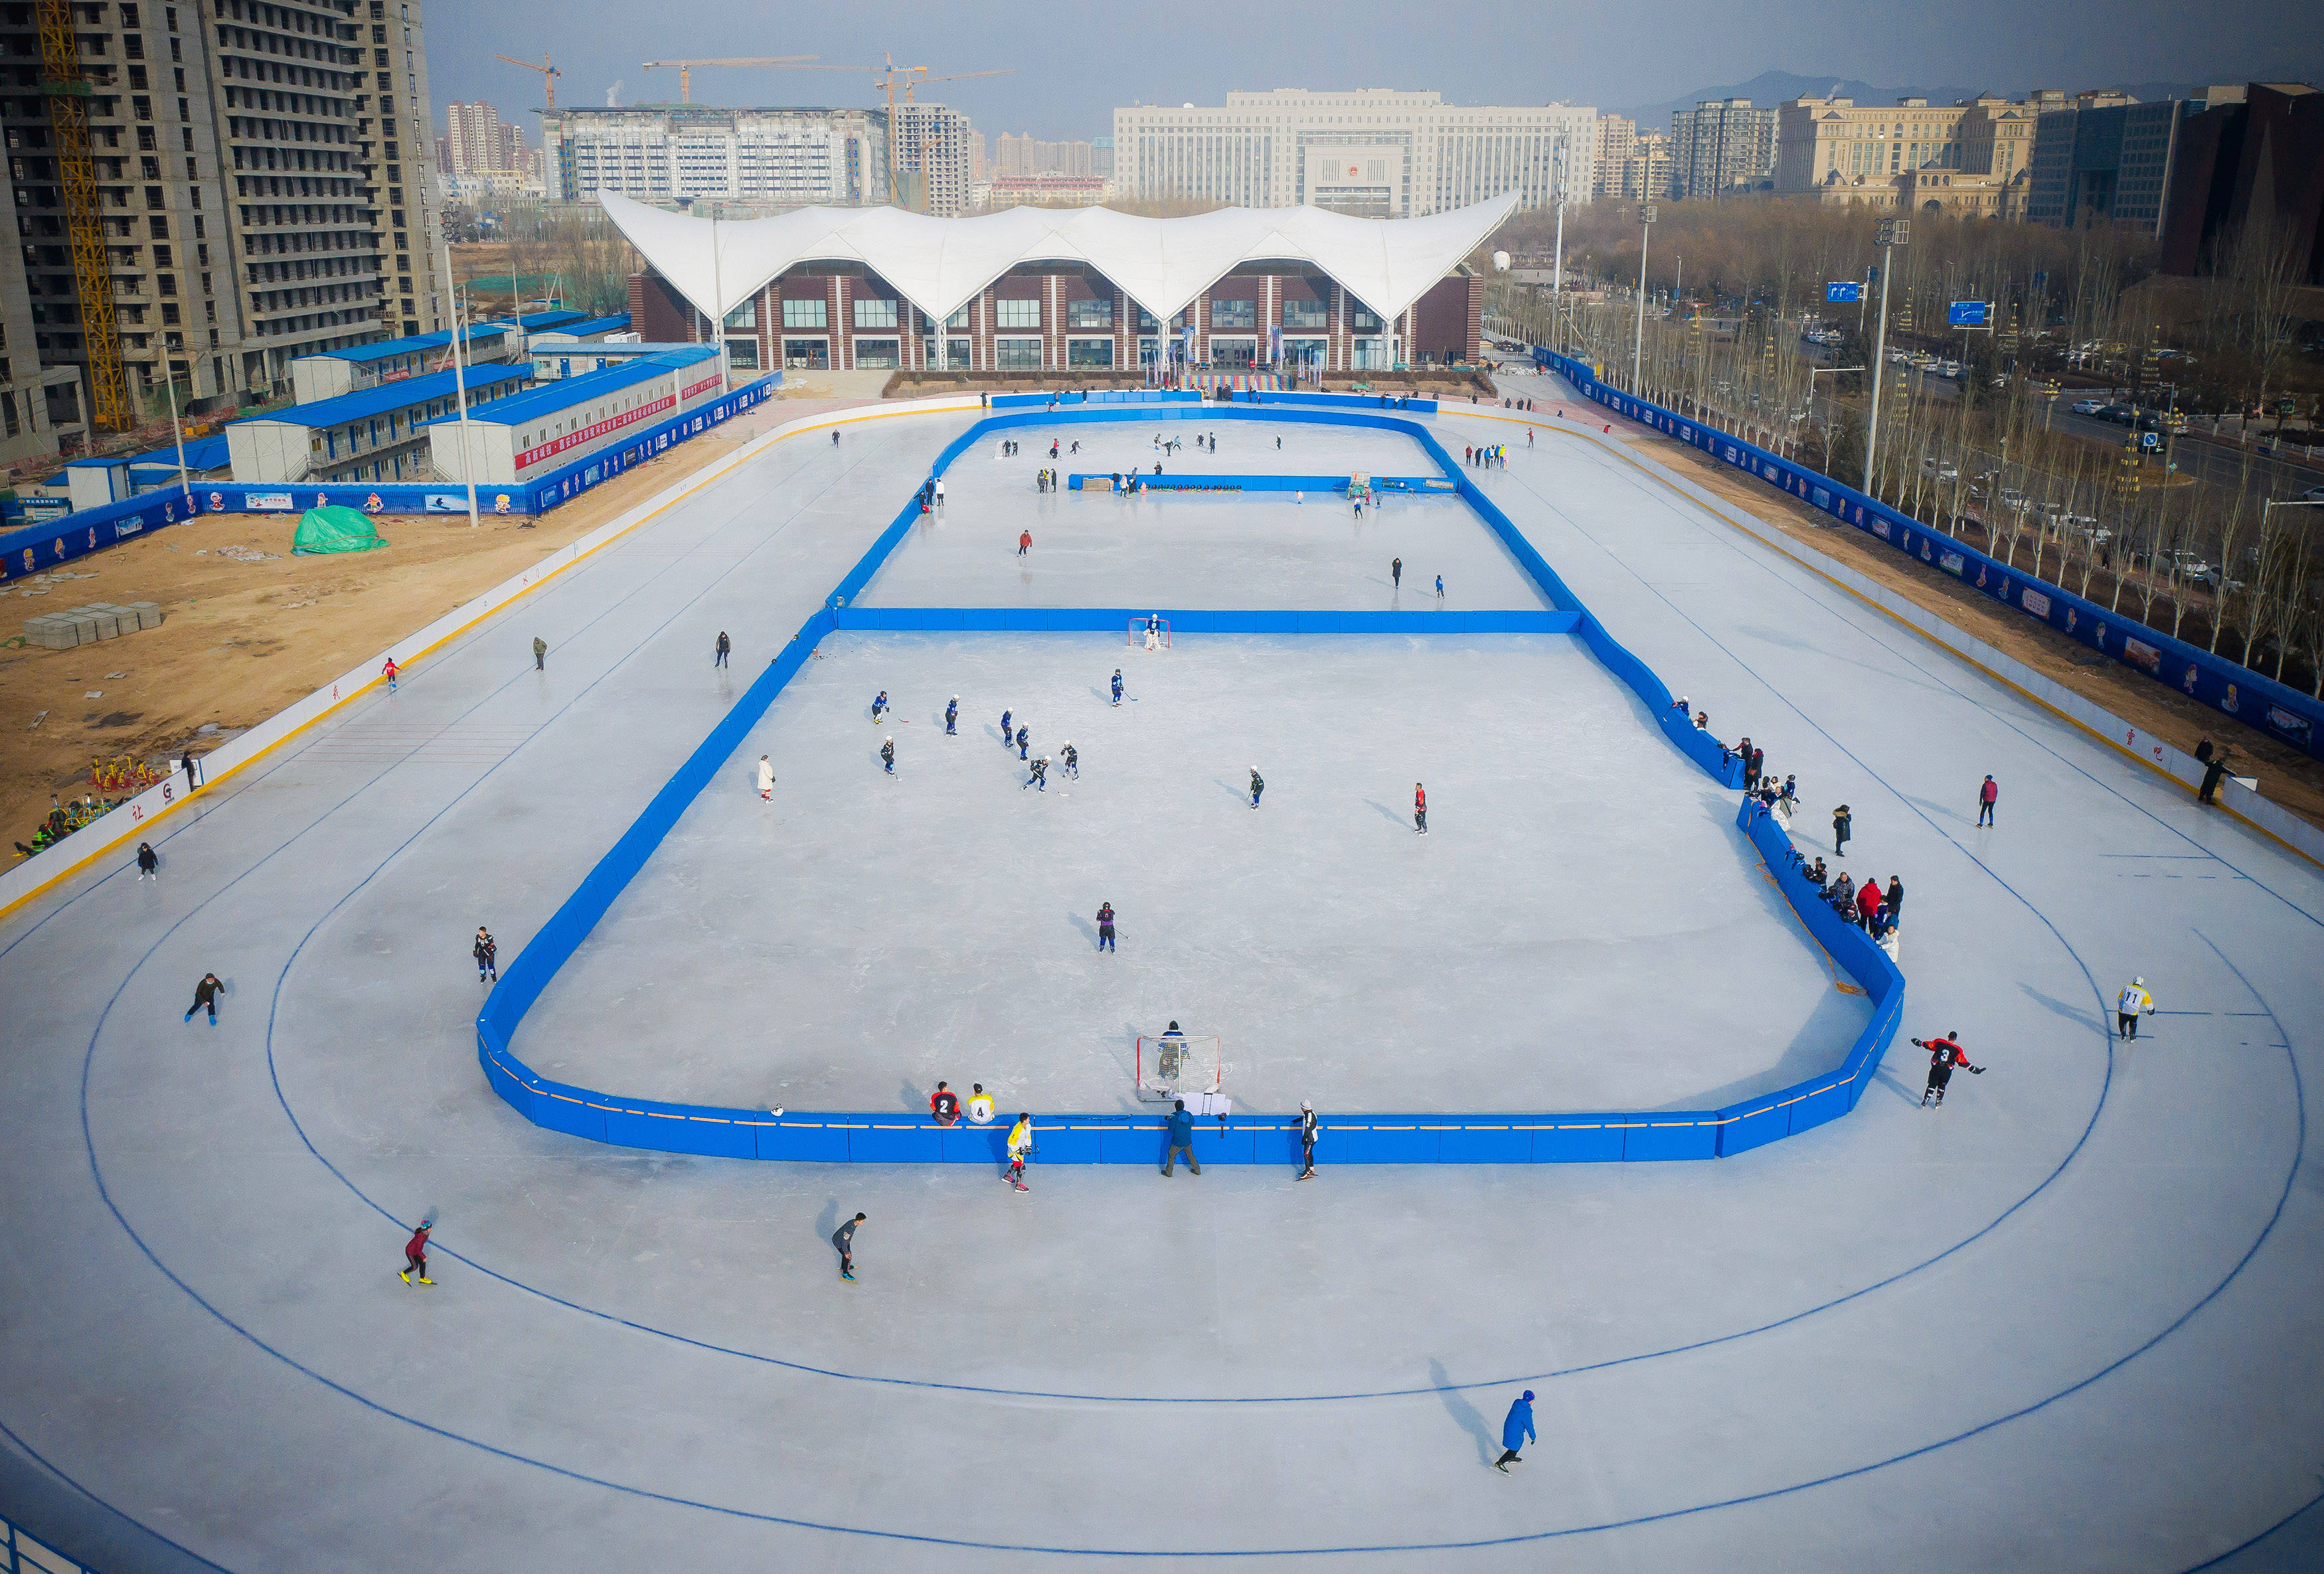 12月12日,人们在张家口经济开发区一滑冰场参加冰上运动(无人机照片)